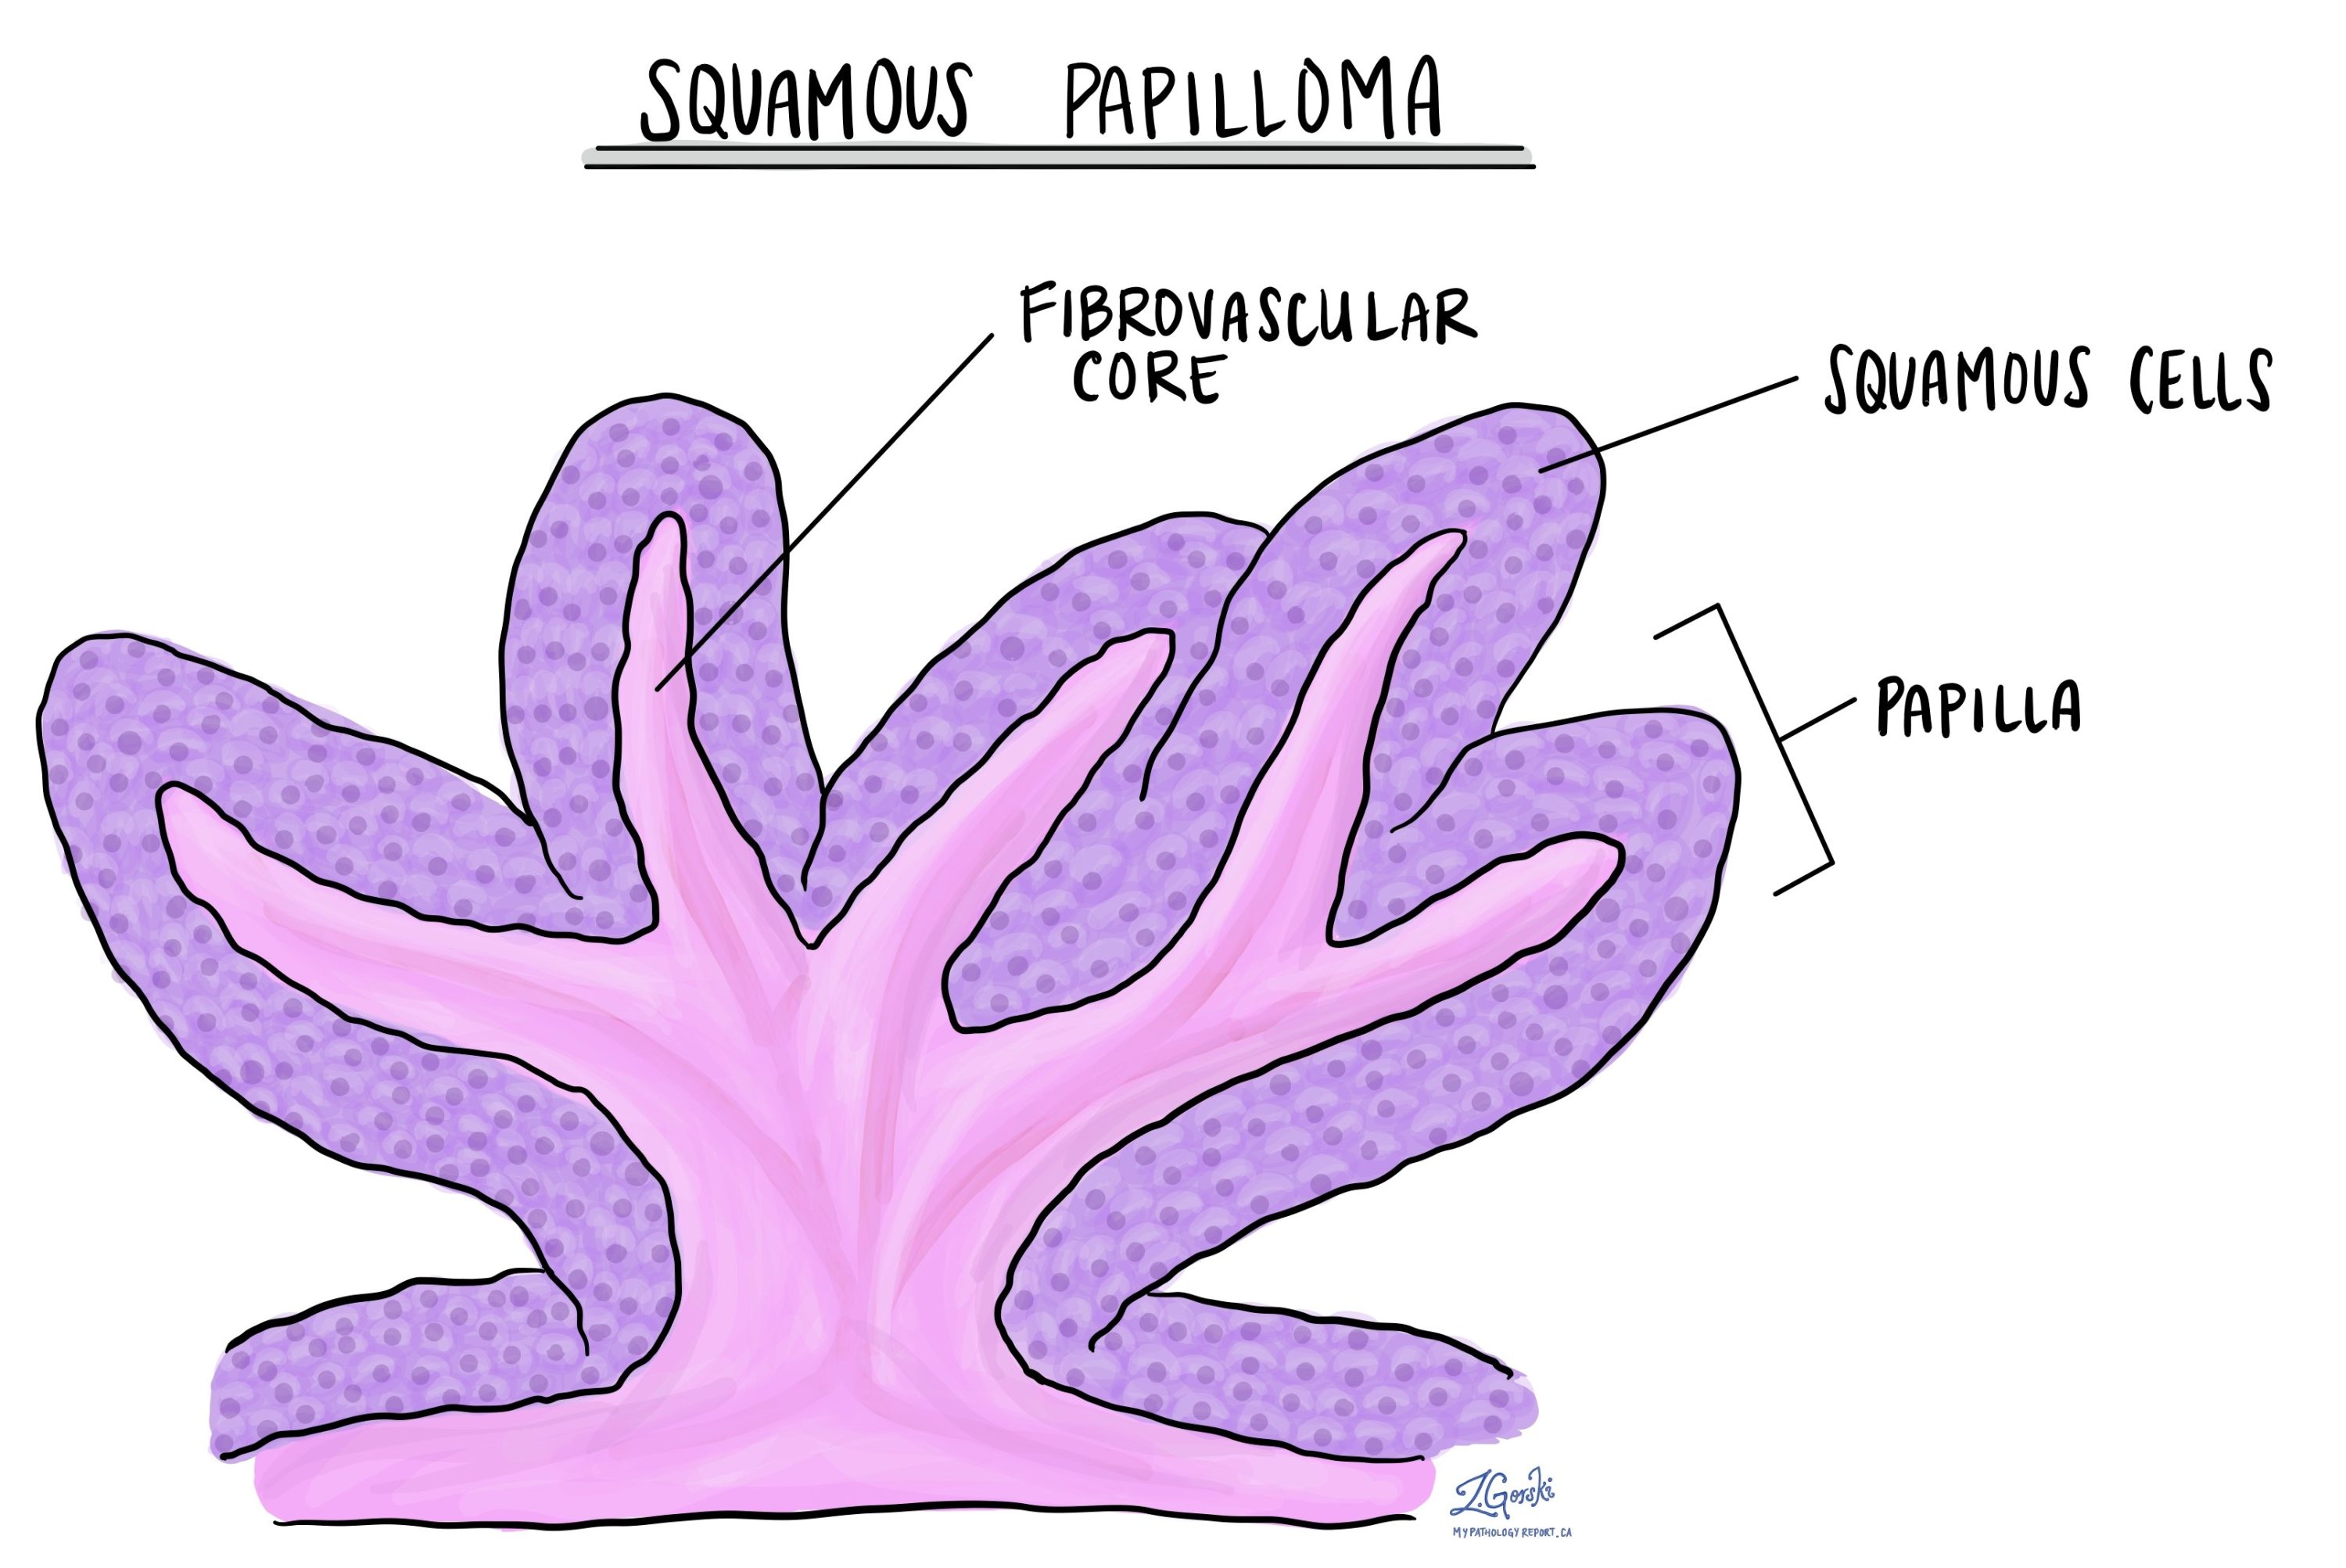 Gingival squamous papilloma, Gingival papilloma histology